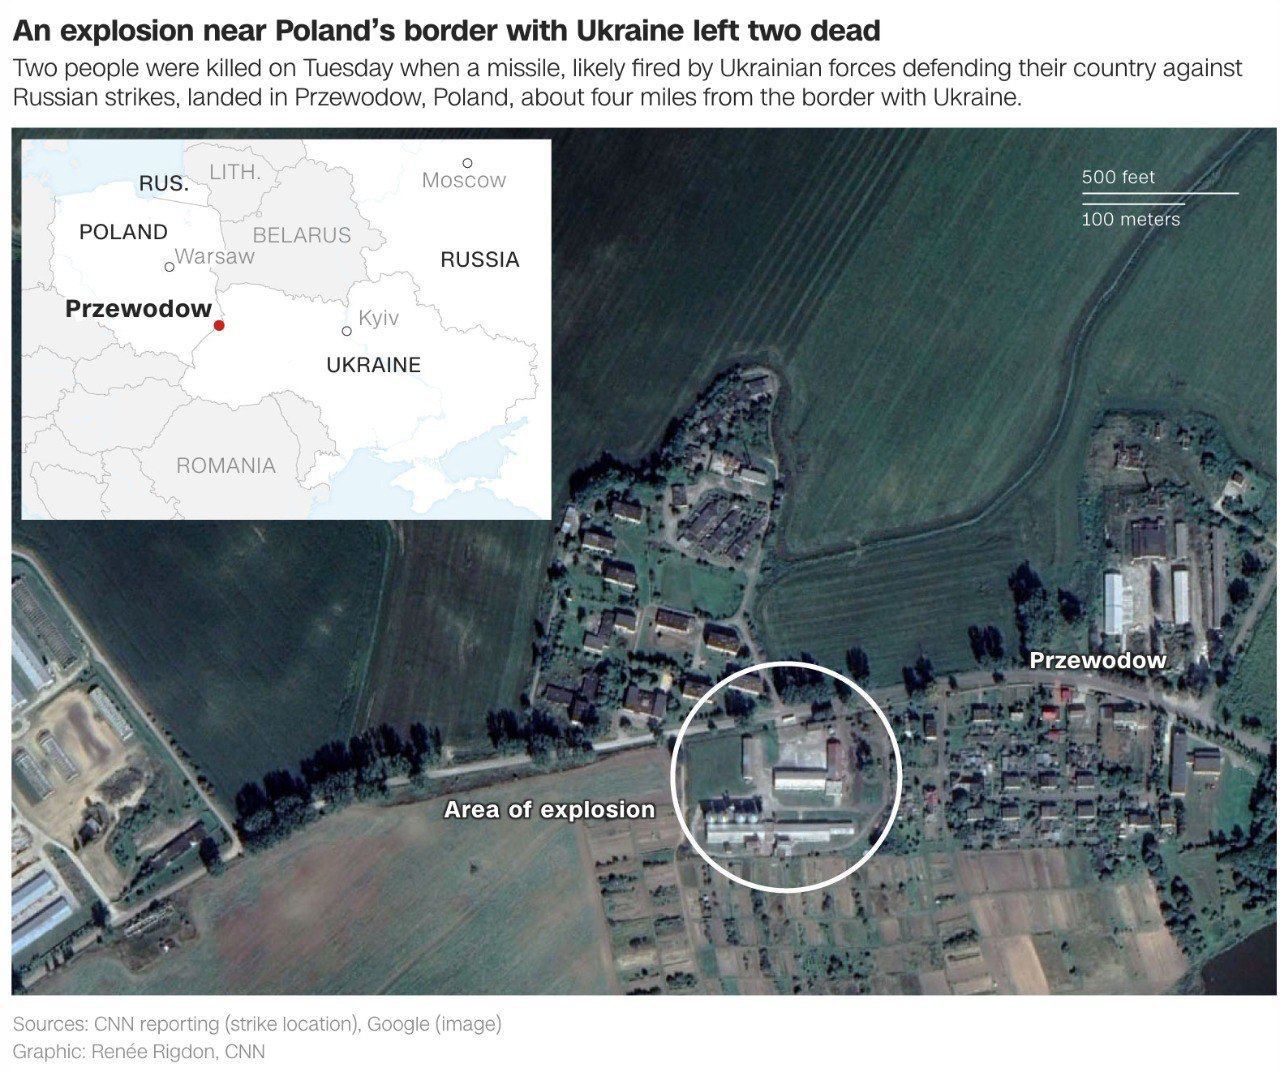 ❗️Доказательства, собранные НАТО, США и Польшей, подтверждают, что на территорию последней прилетела украинская ракета, — глава Бюро нацбезопасности Польши Яцек Севера